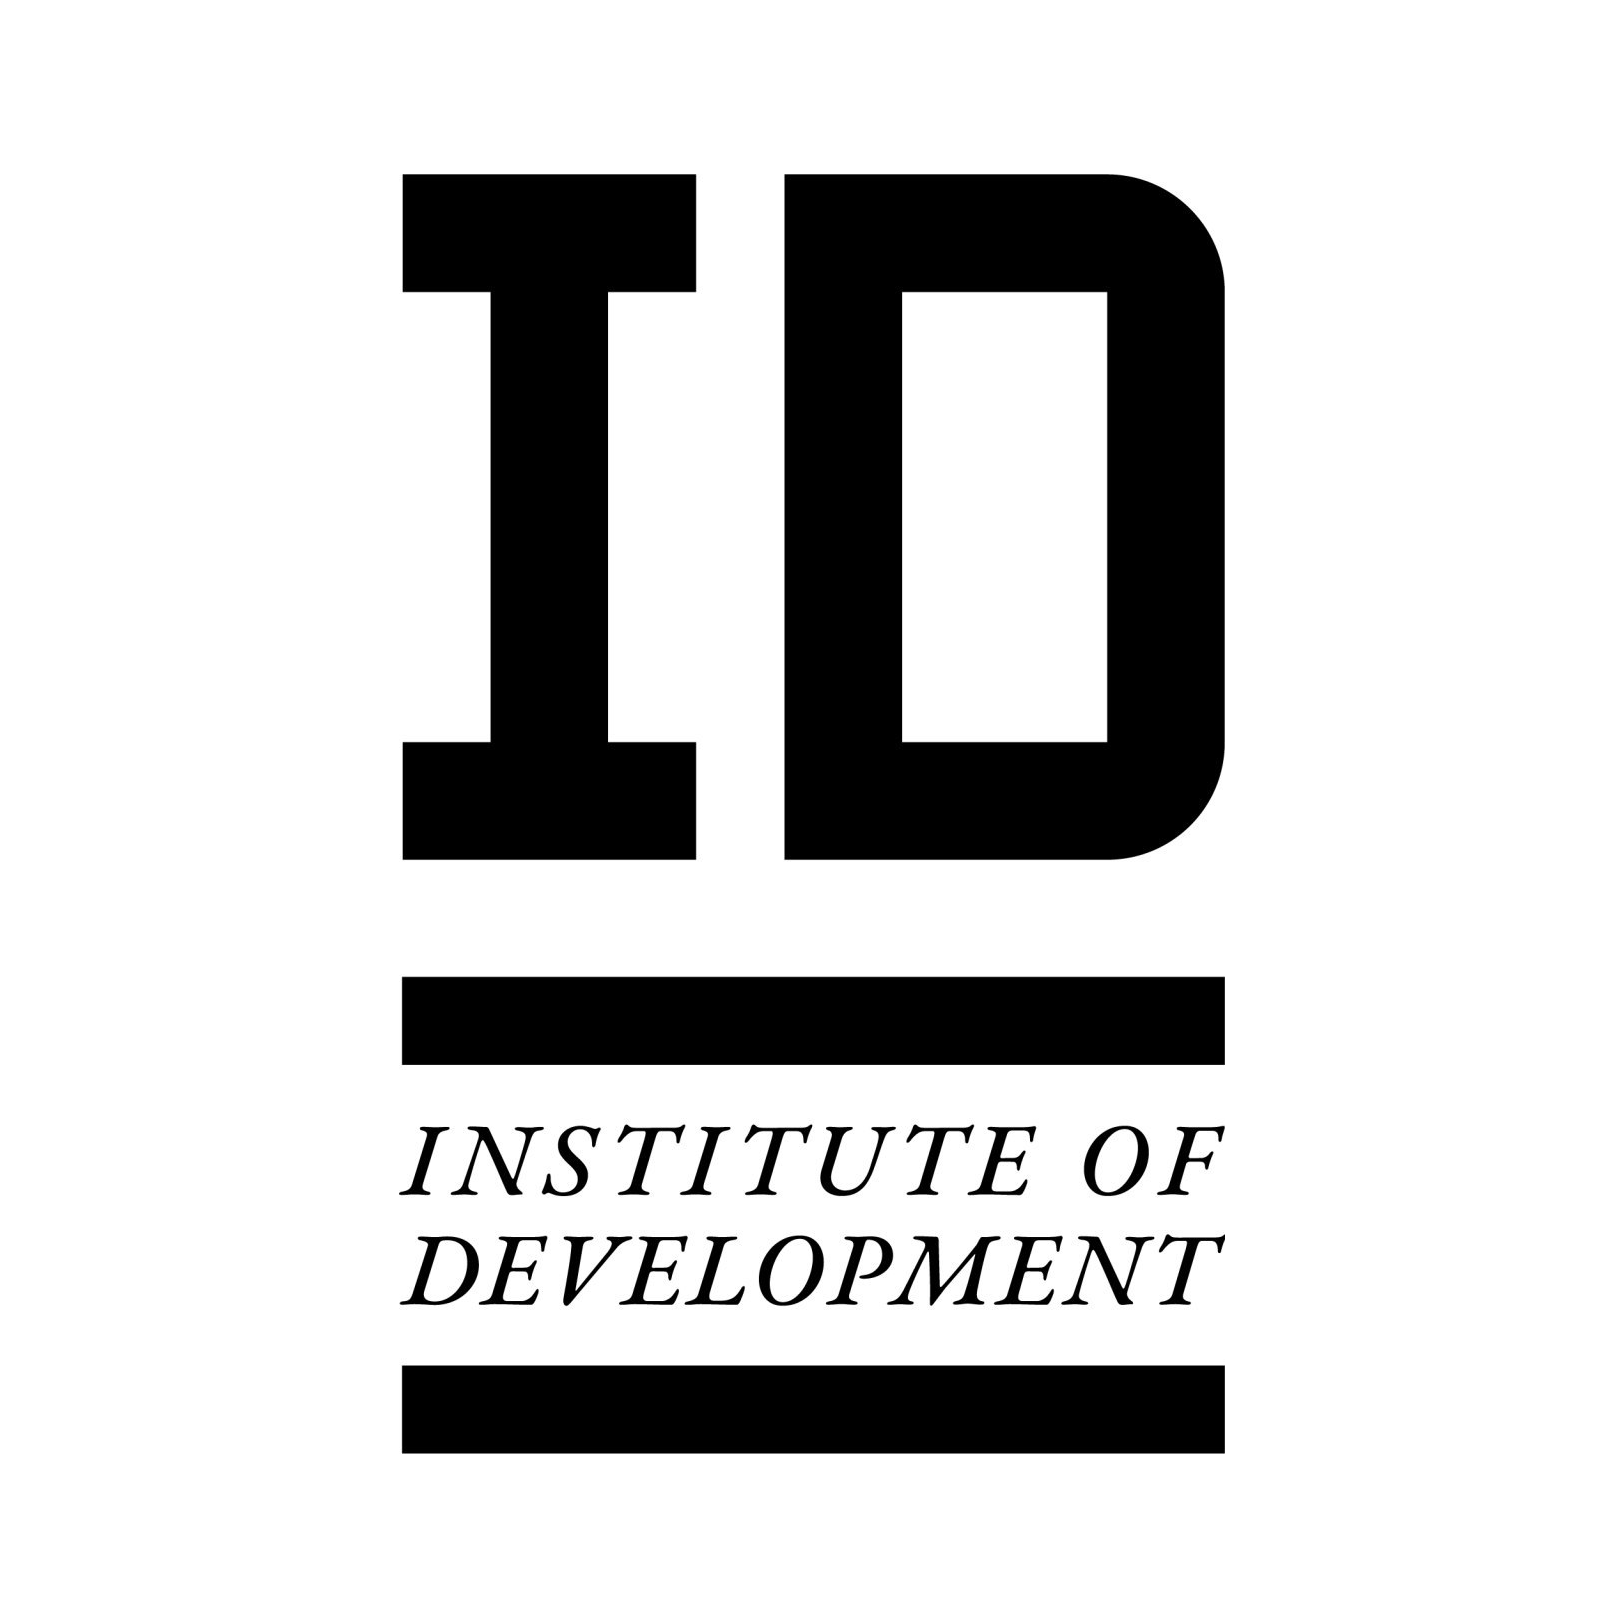 Інститут персонального та організаційного розвитку